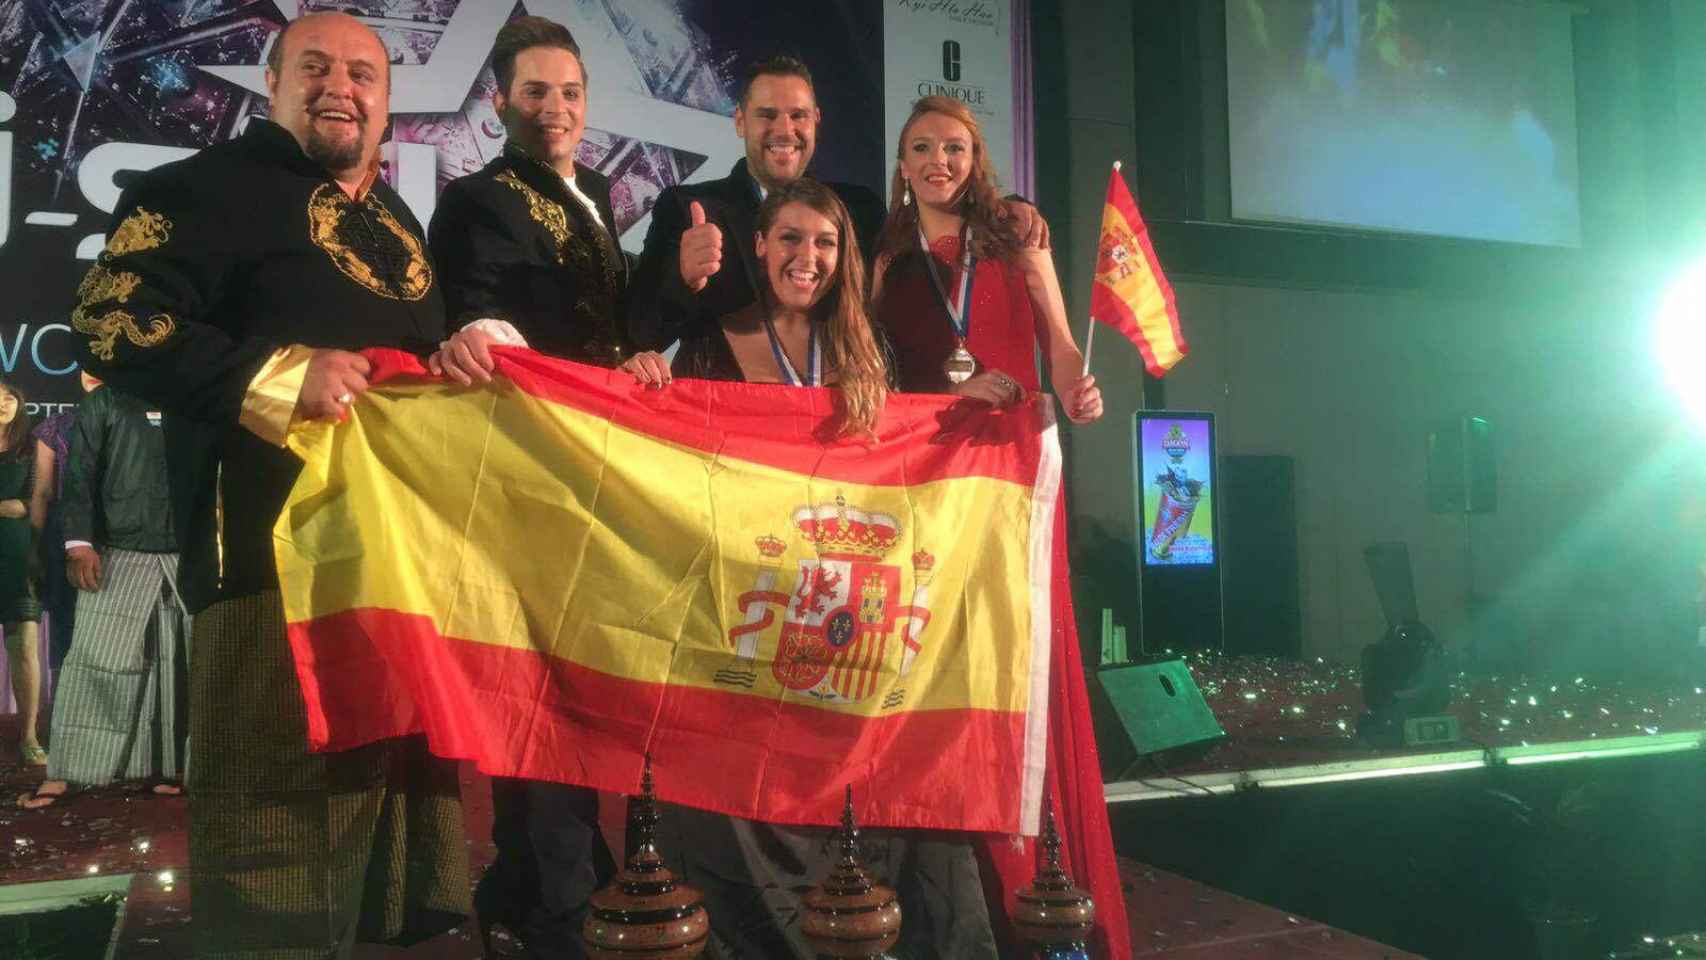 La selección española de karaoke al completo, con el seleccionador Karlos Hurtado a la izquierda